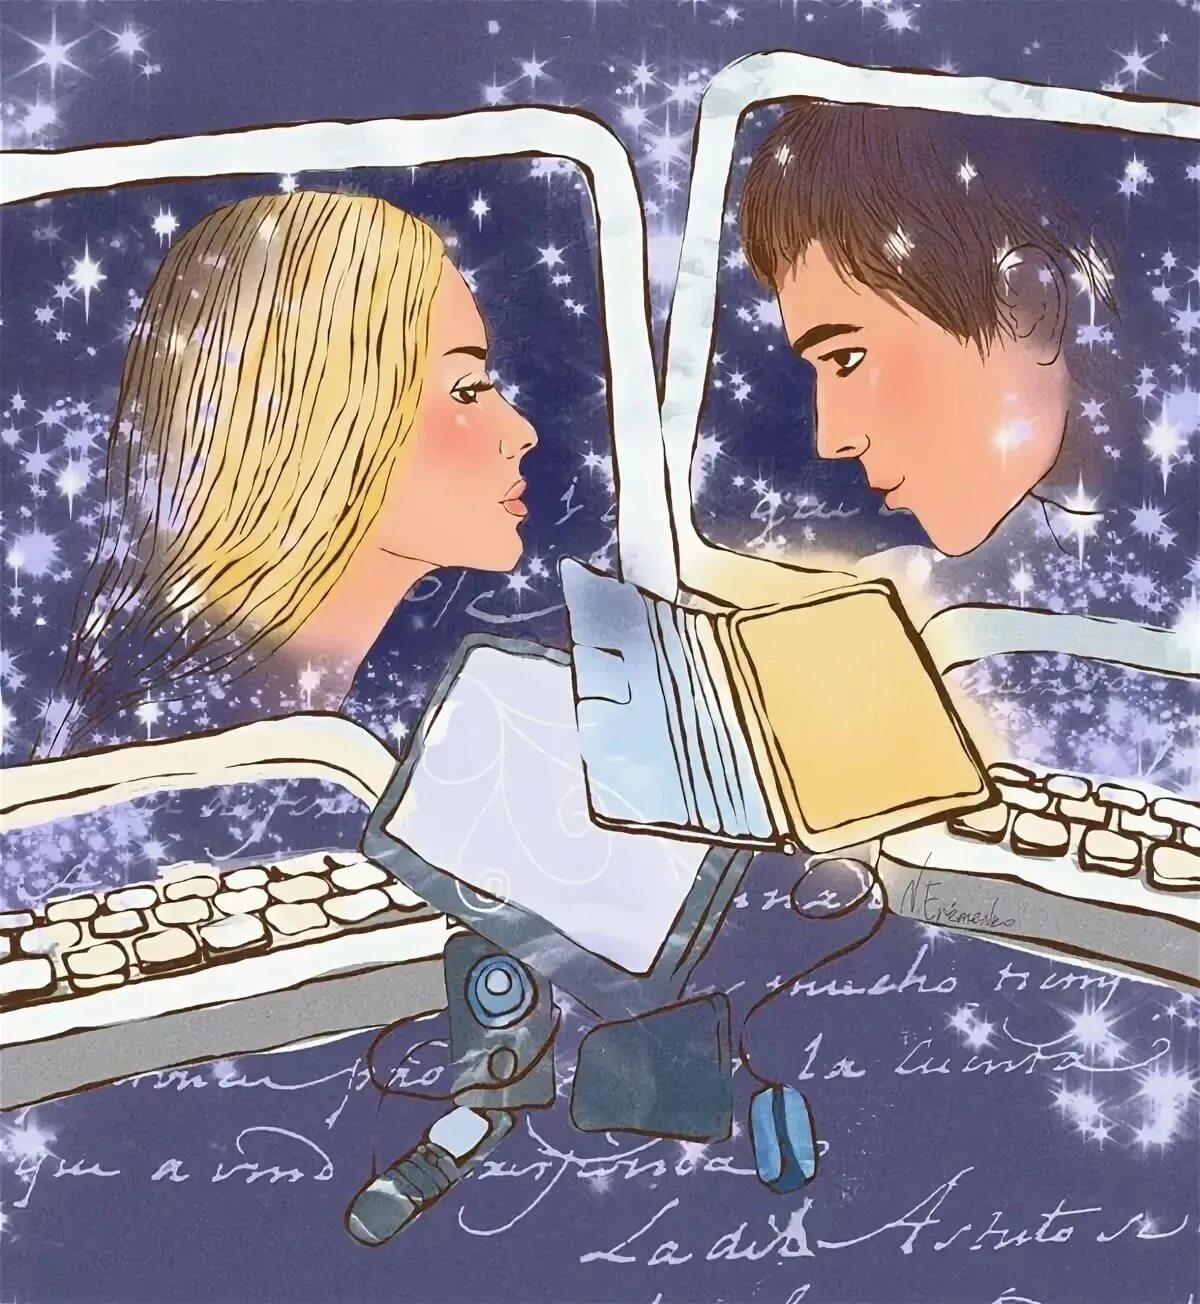 Переписываемся месяц. Интернет любовь. Виртуальное общение иллюстрация. Виртуальная любовь. Общение людей в интернете иллюстрация.